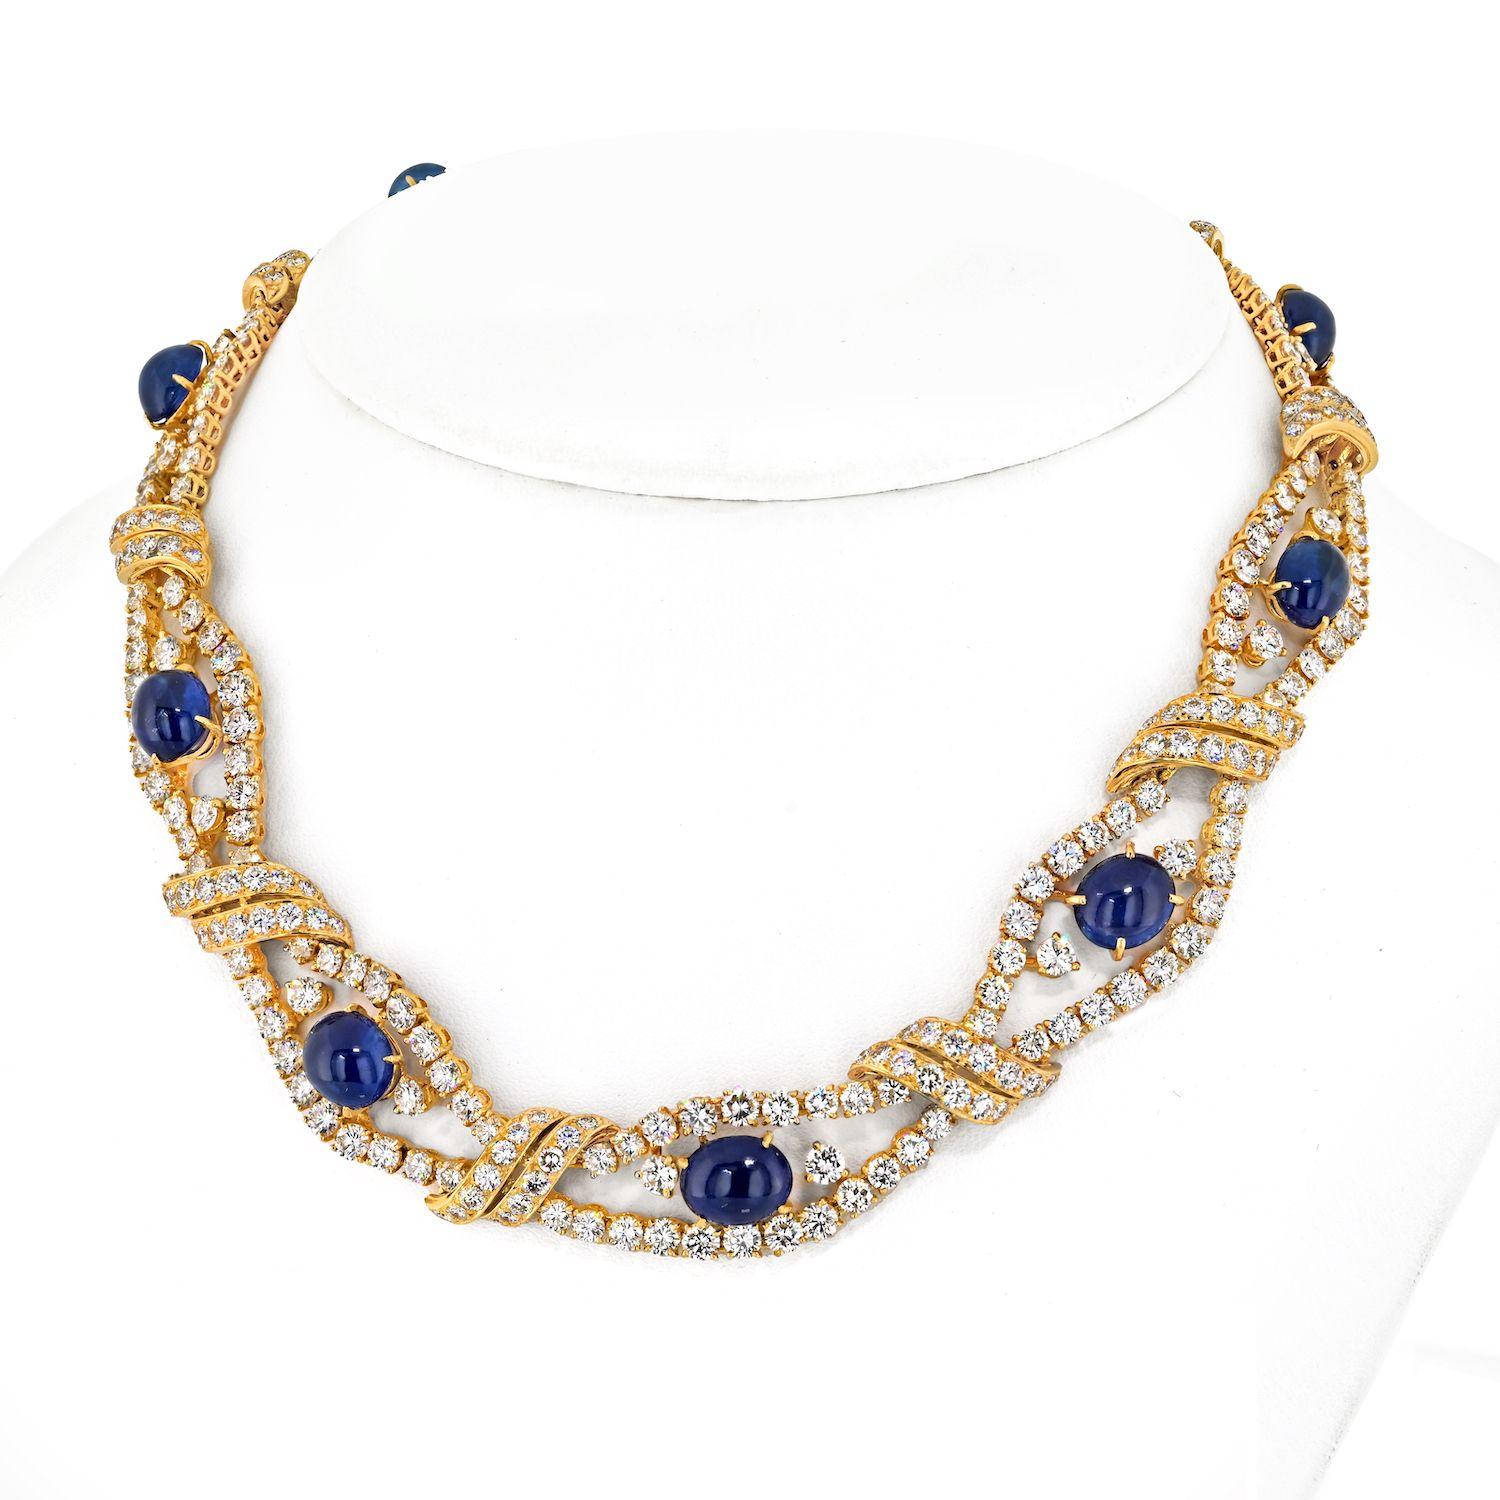 Lassen Sie sich von der Diamant- und Saphir-Halskette Estate von M. Gerard verführen, einem Meisterwerk, das klassische Eleganz mit natürlicher Pracht verbindet. Diese exquisite Halskette besteht aus neun Saphir-Cabochons, jeder ein einzigartiges